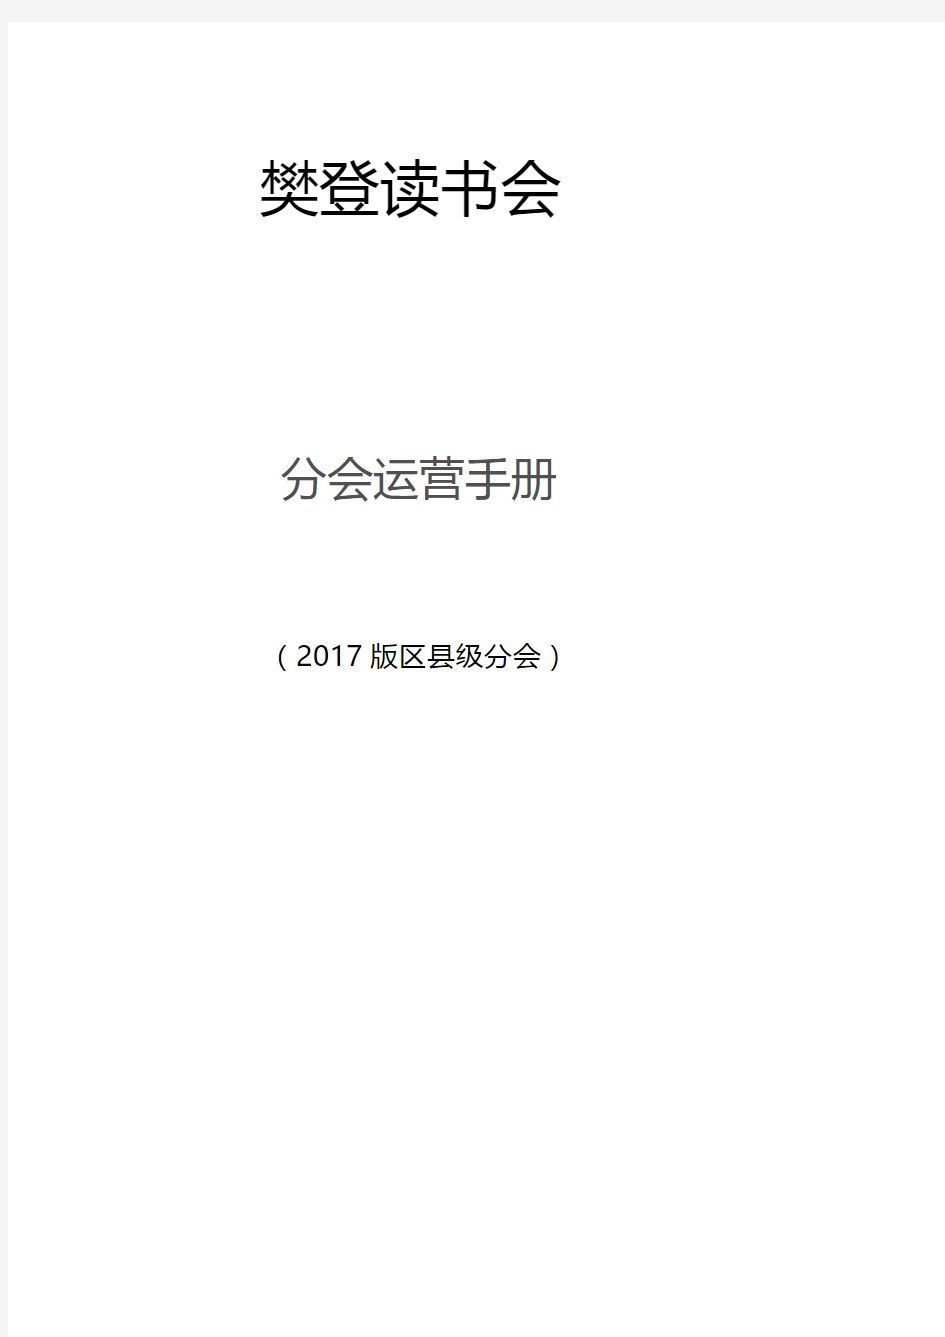 2017年樊登读书会市级分会运营手册OK